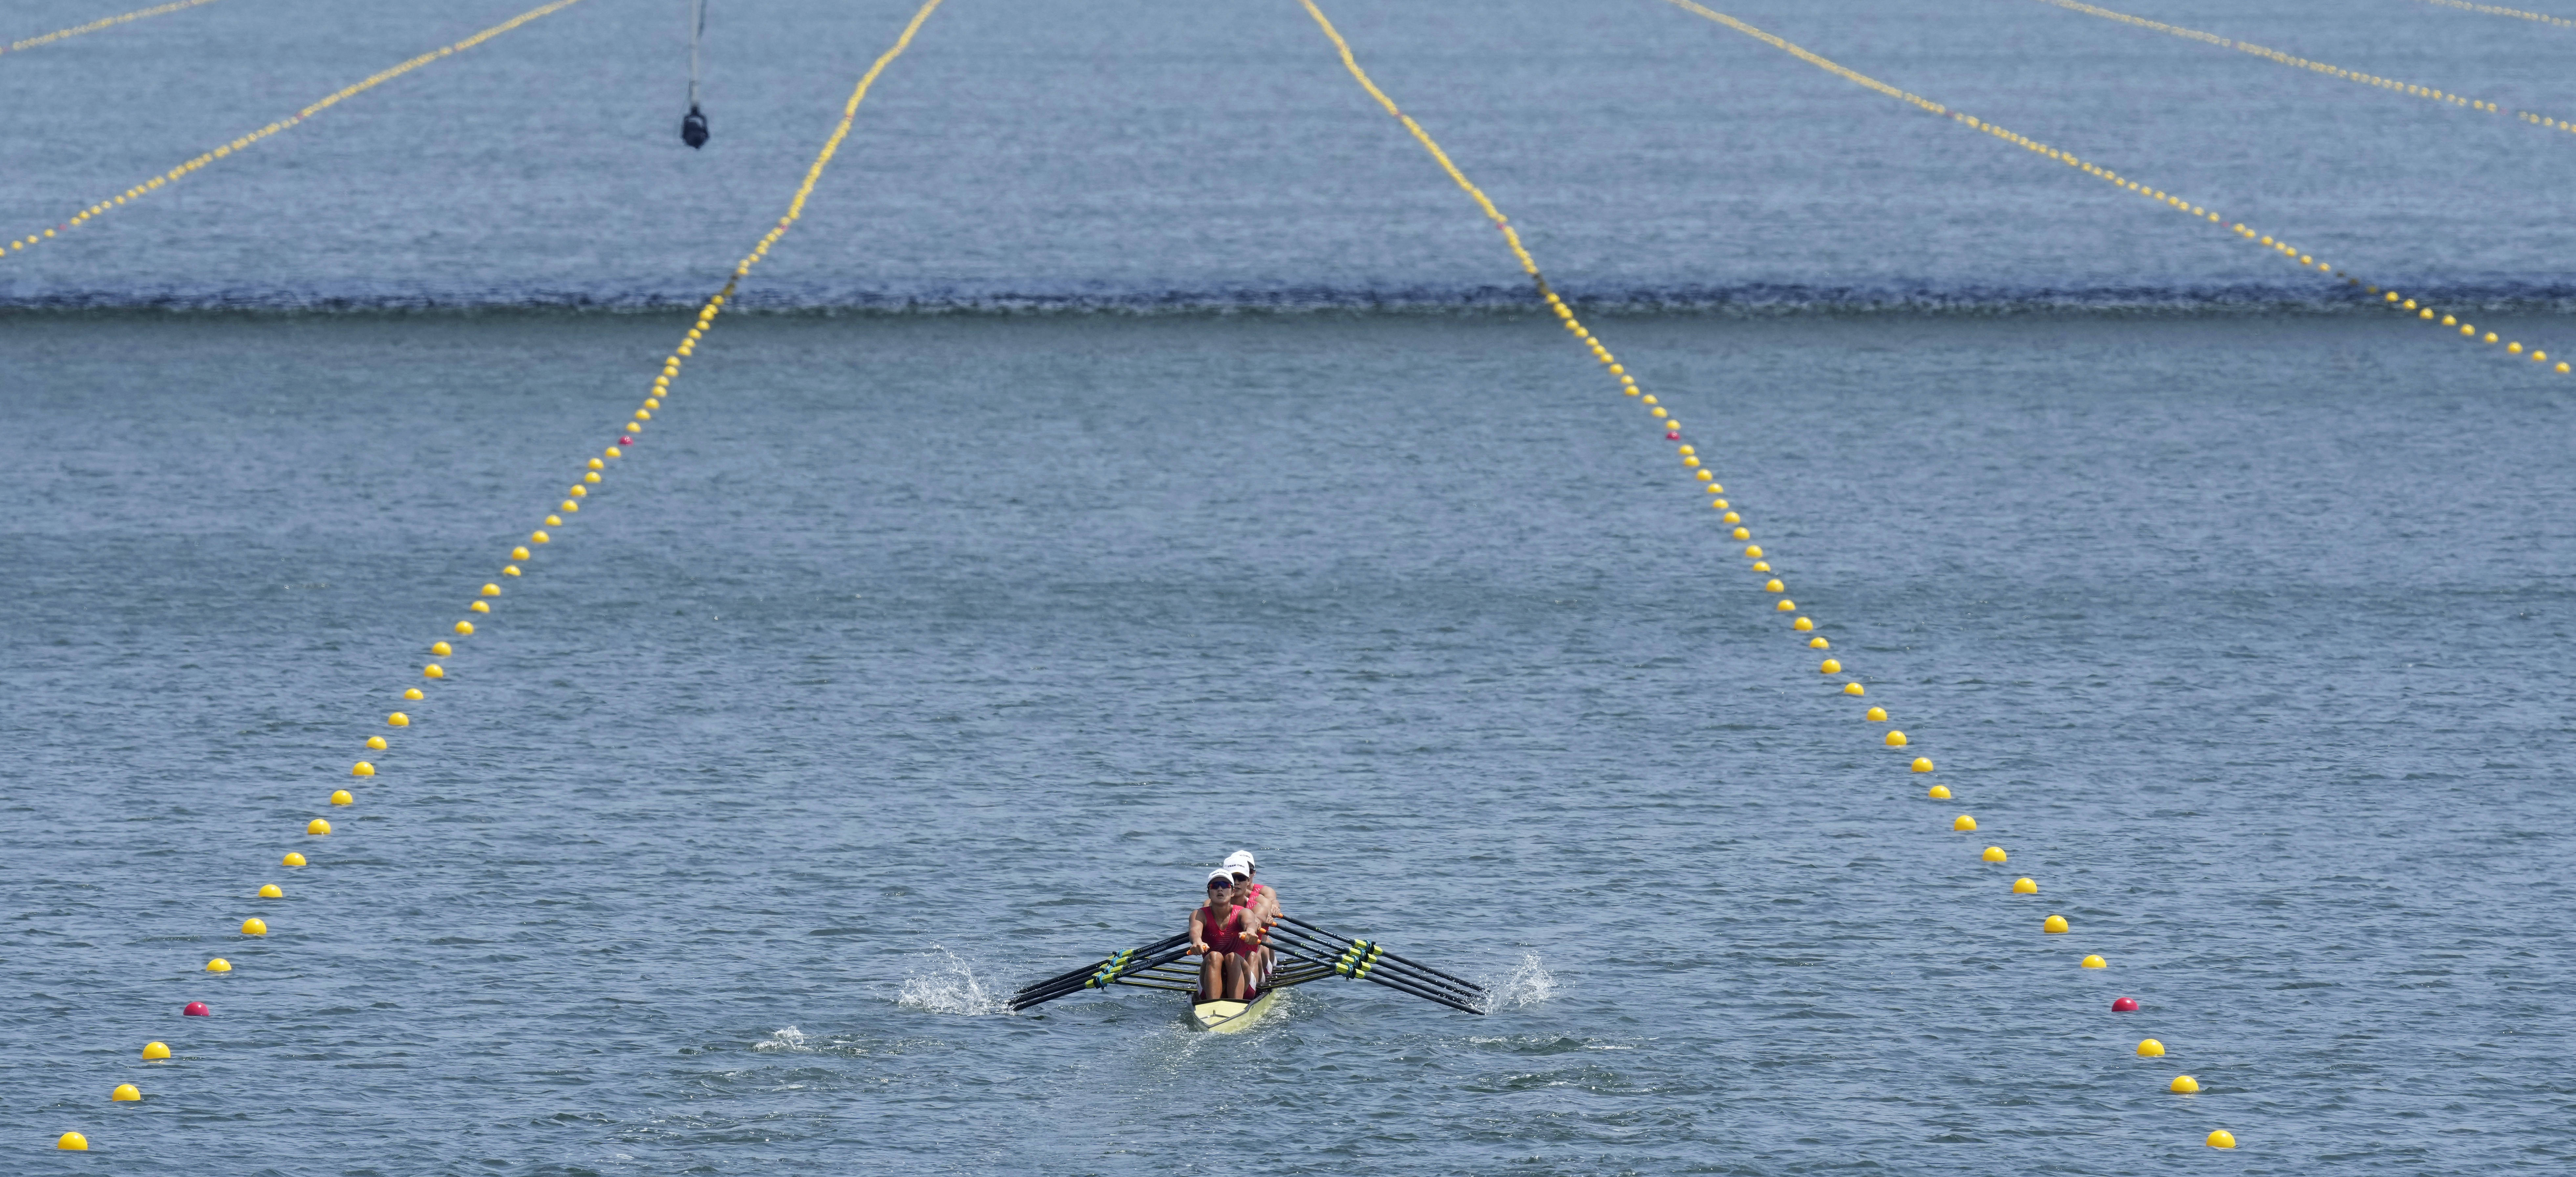 新华社记者 杜潇逸 摄当日,在东京奥运会赛艇项目女子四人双桨决赛中